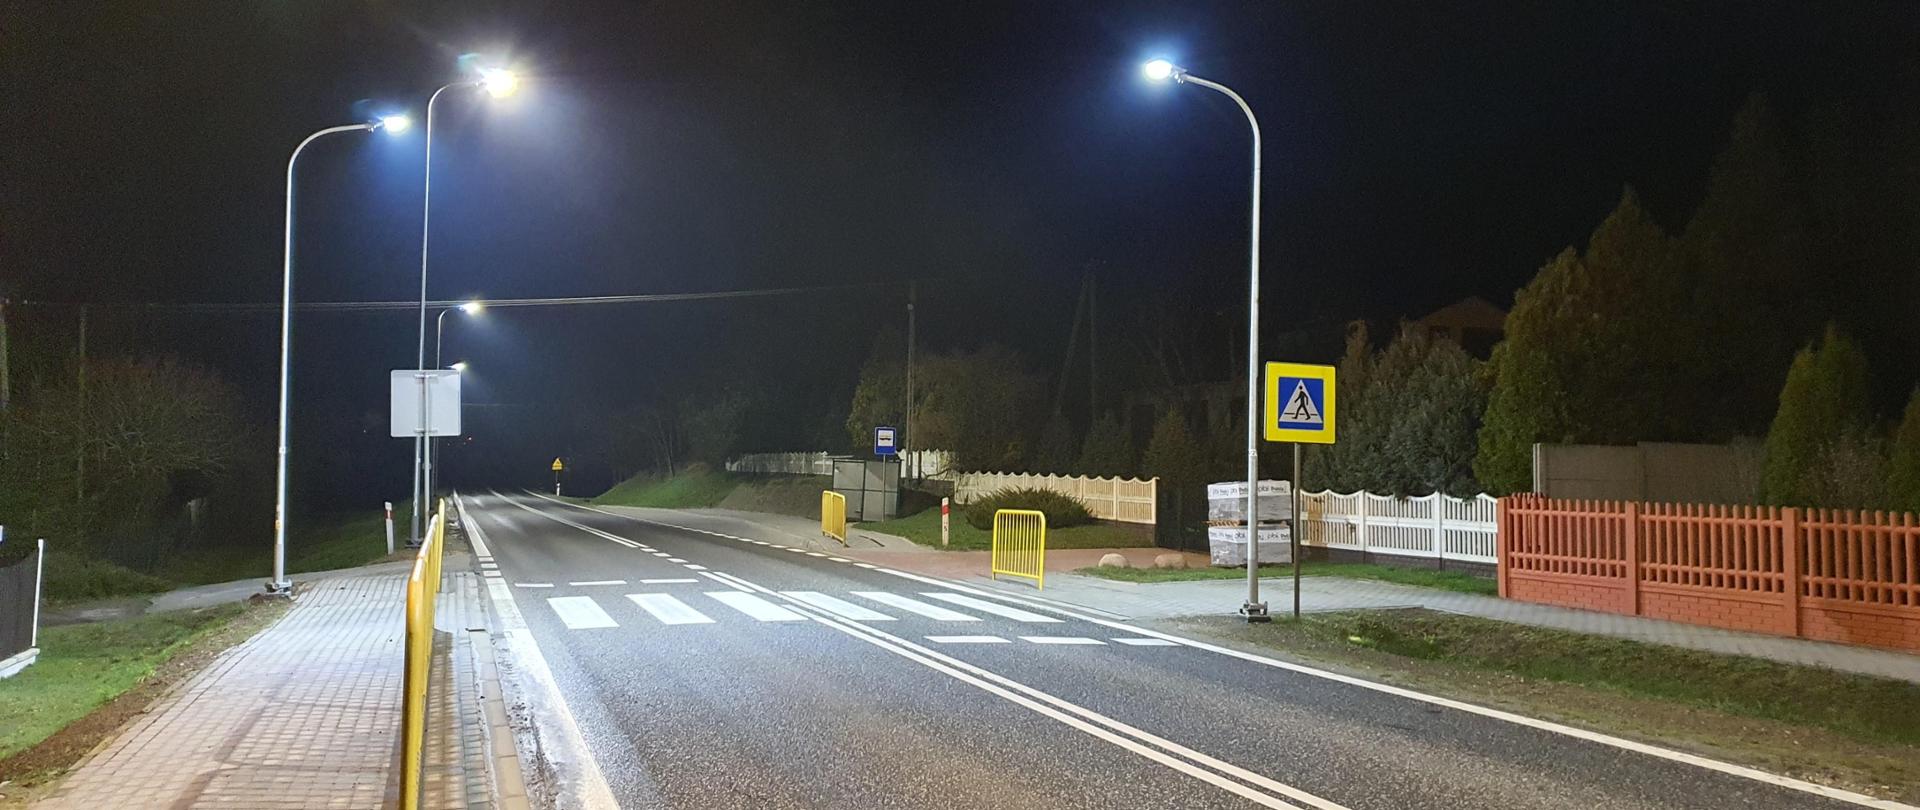 Przejście dla pieszych - oznakowanie poziome - białe pasy na jezdni, latarnie oświetlające przejście w nocy, znak drogowy "przejście dla pieszych" 